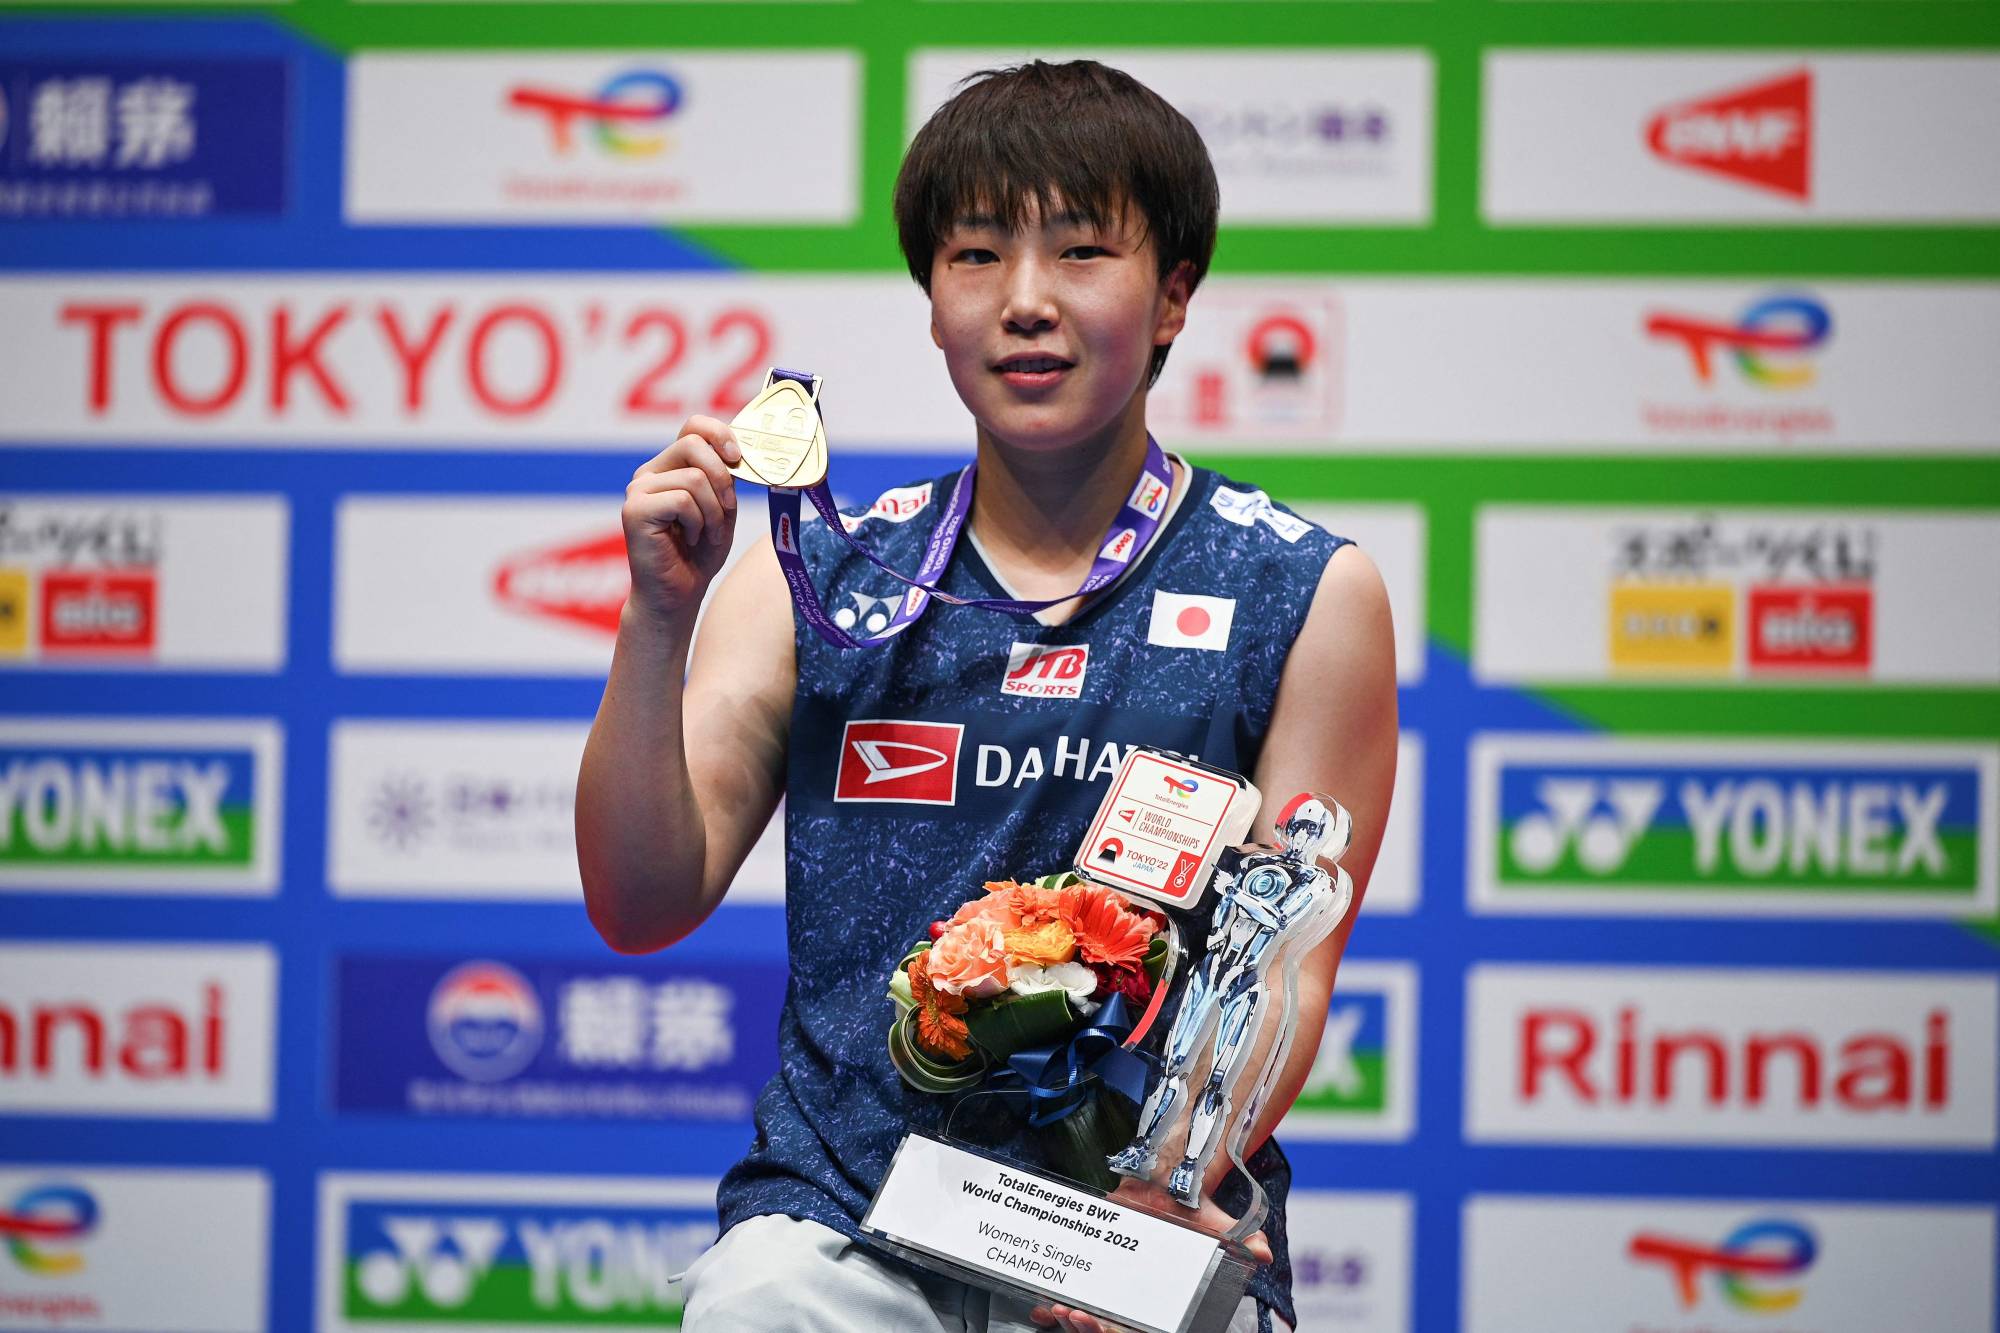 Akane Yamaguchi wins second straight world title